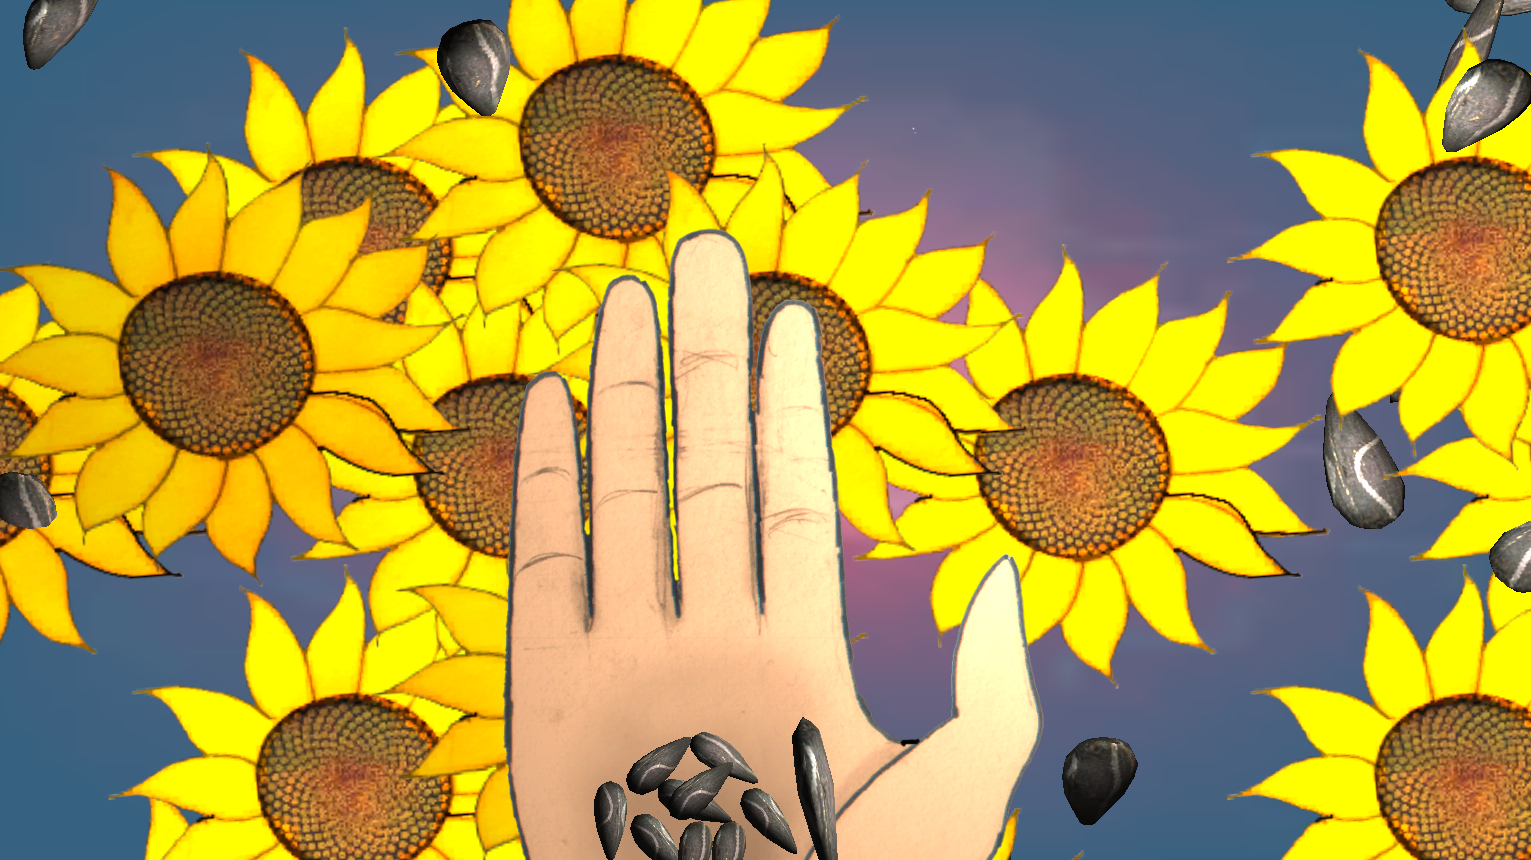 IMAGE(http://littleredgame.files.wordpress.com/2014/03/sunflowers_chapter1.jpg)